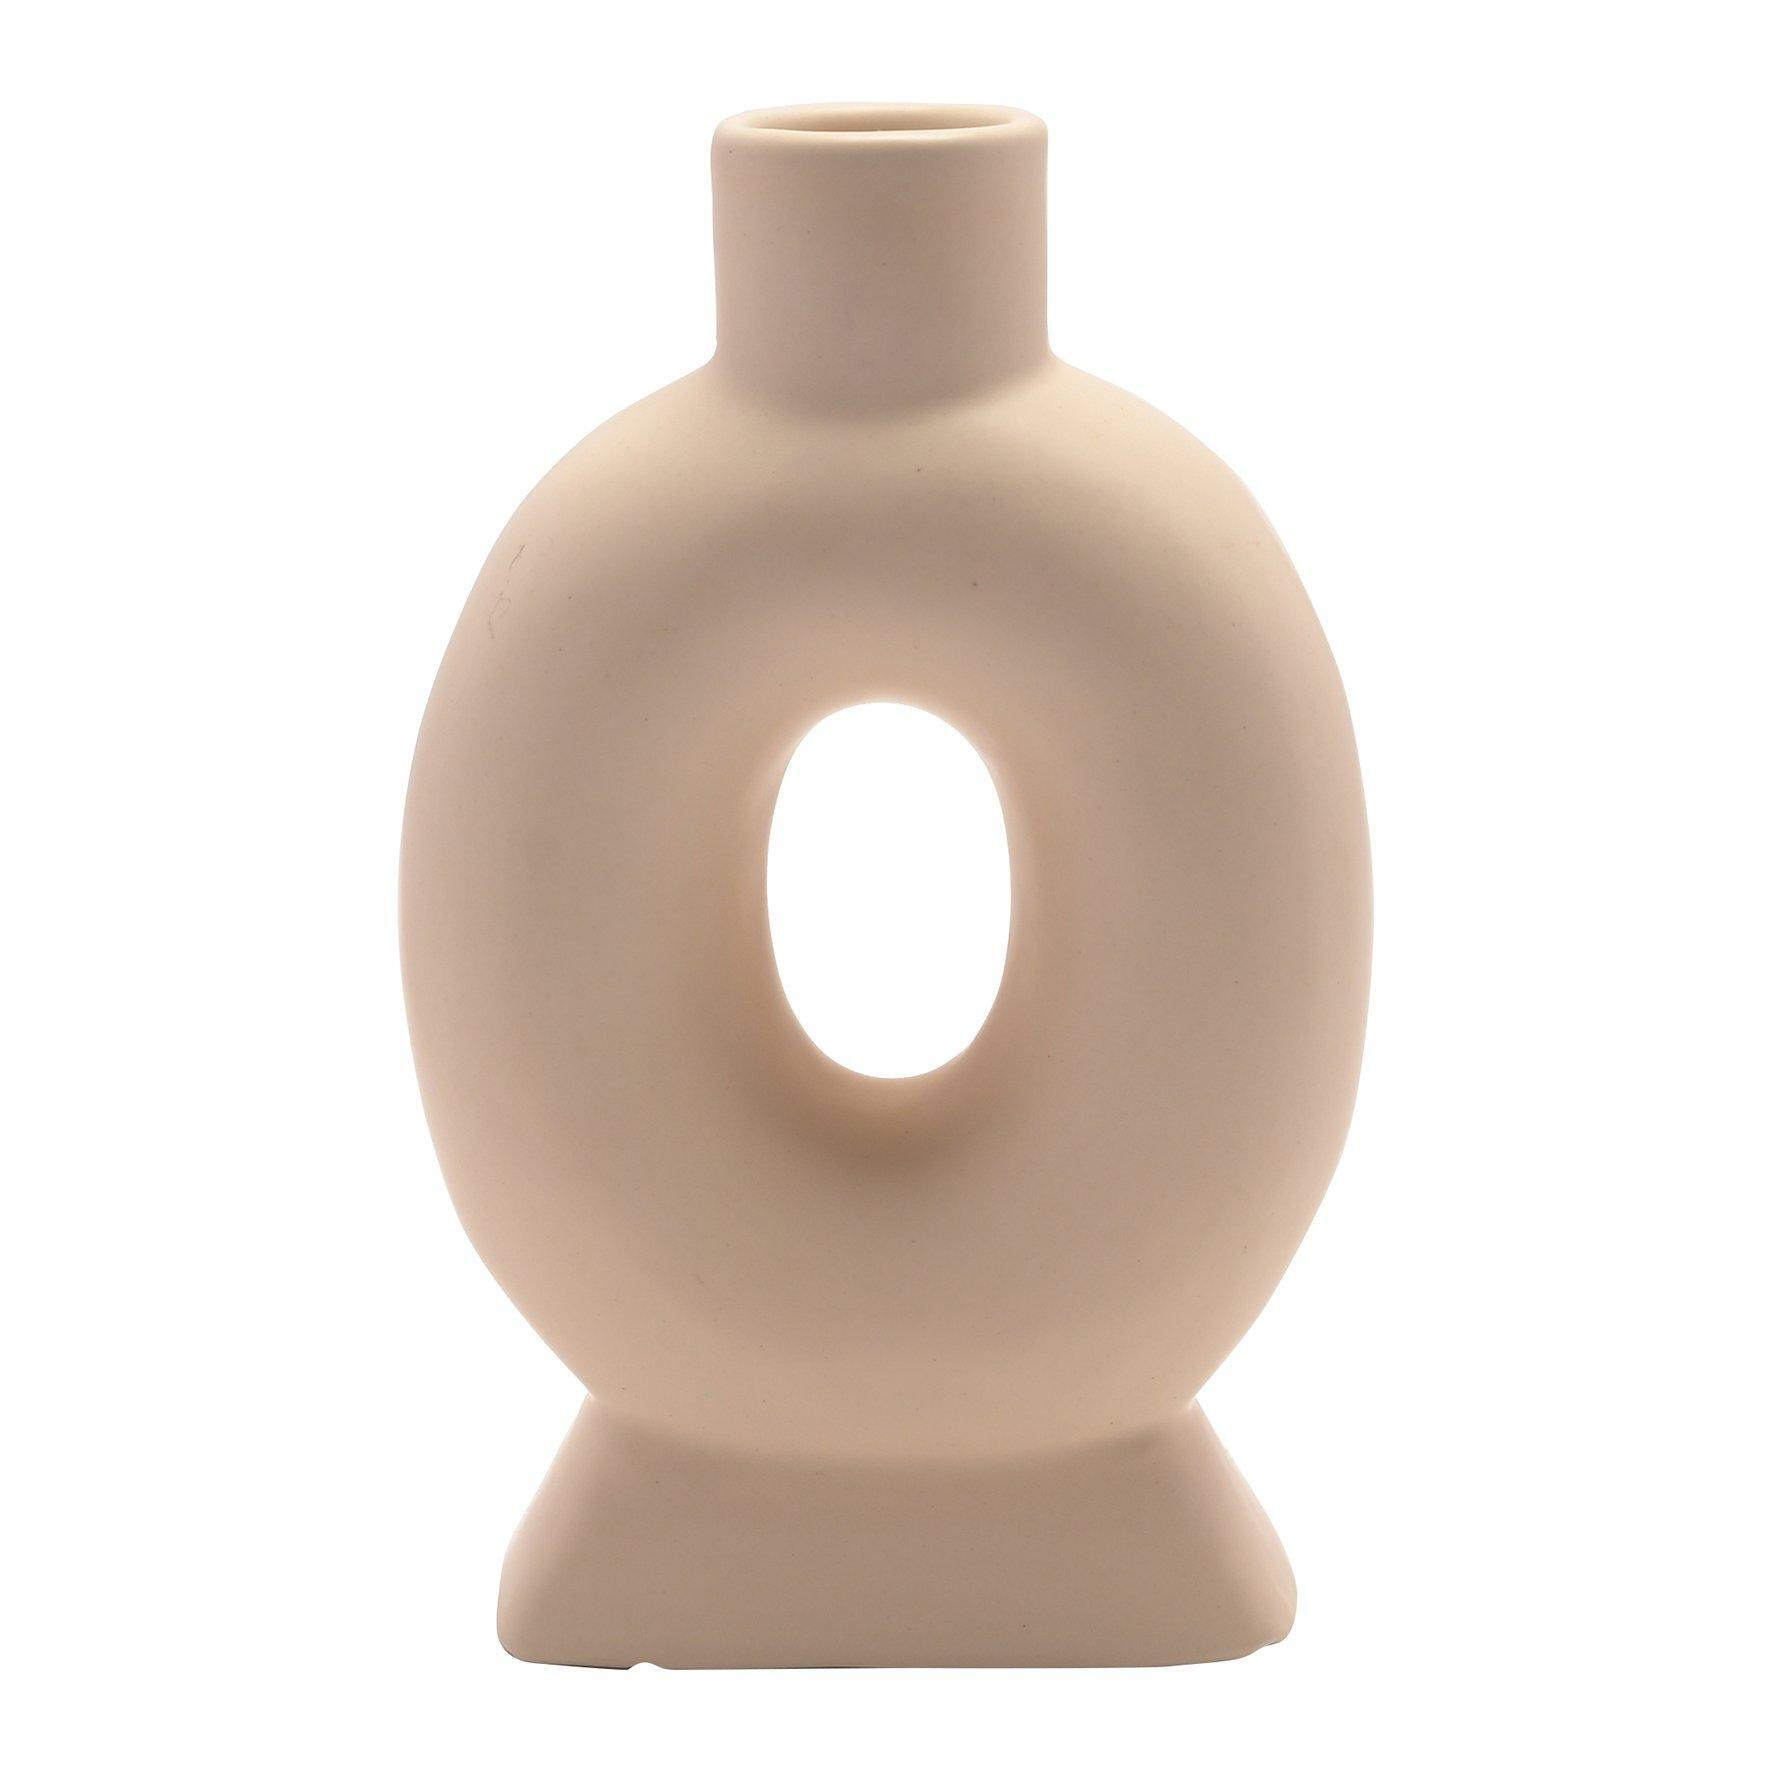 Cream Oval Style Vase - image 1